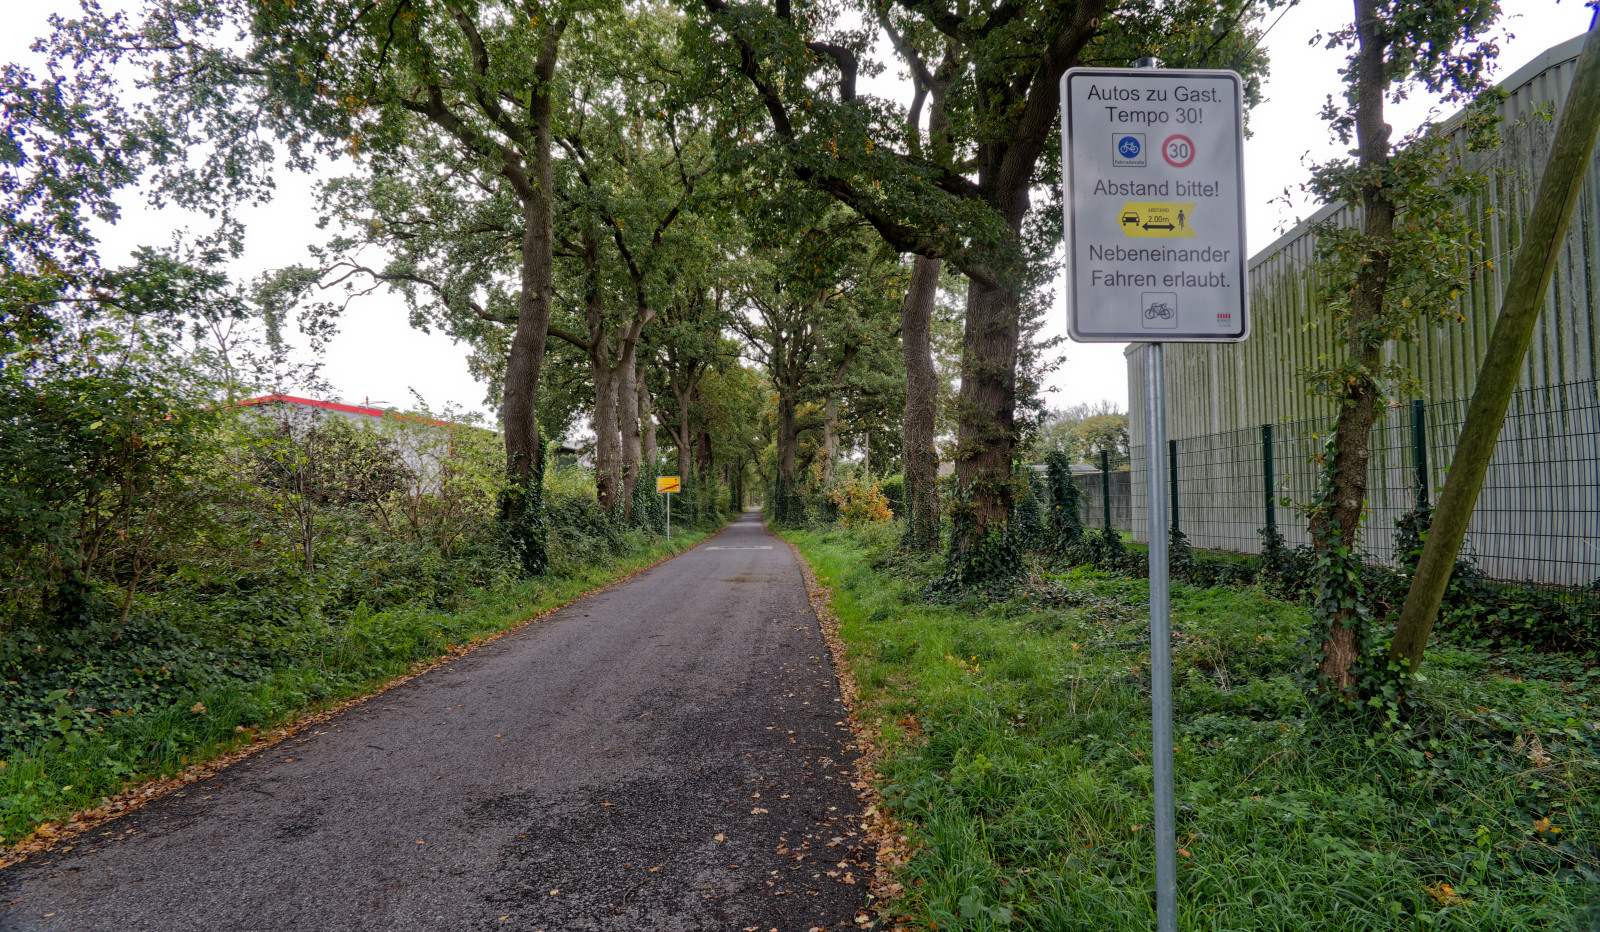 Schmale LandStraße am OrtsRand. Ein Schild "Autos zu Gast – Tempo 30 – Fahrradstraße – Abstand bitte".